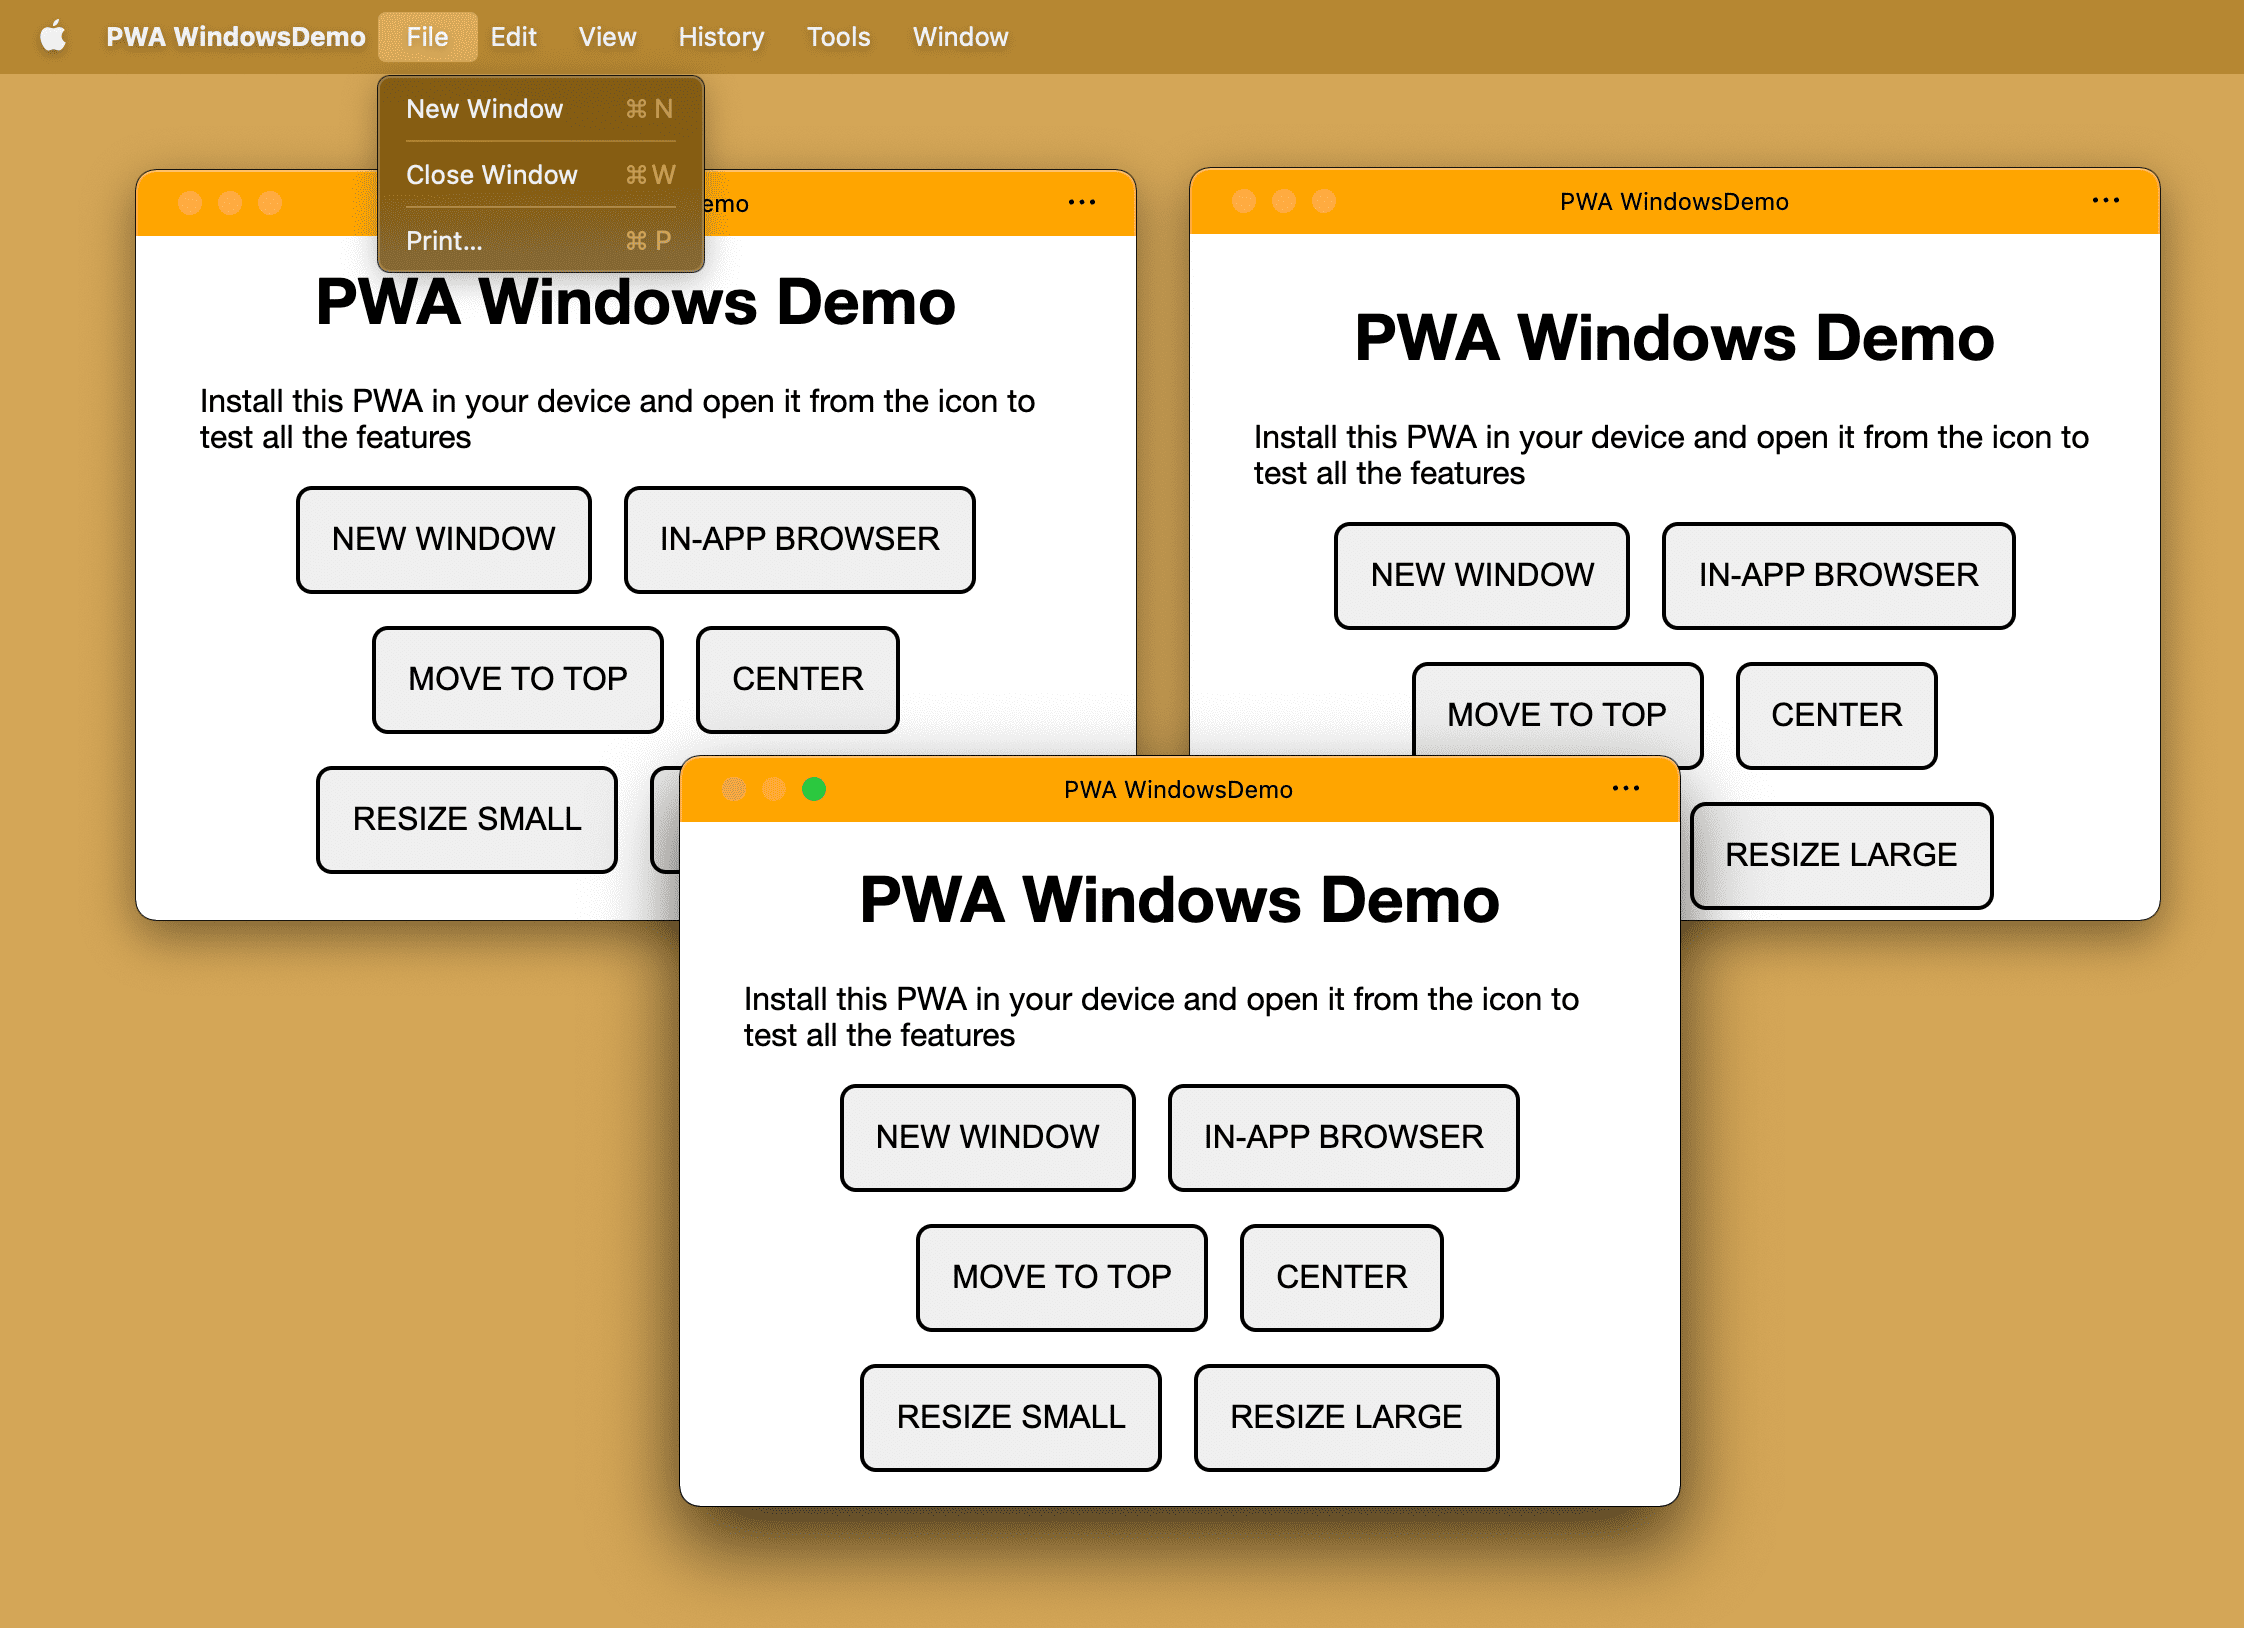 אותה PWA מותקנת עם מספר חלונות שנפתחו במערכת הפעלה במחשב.